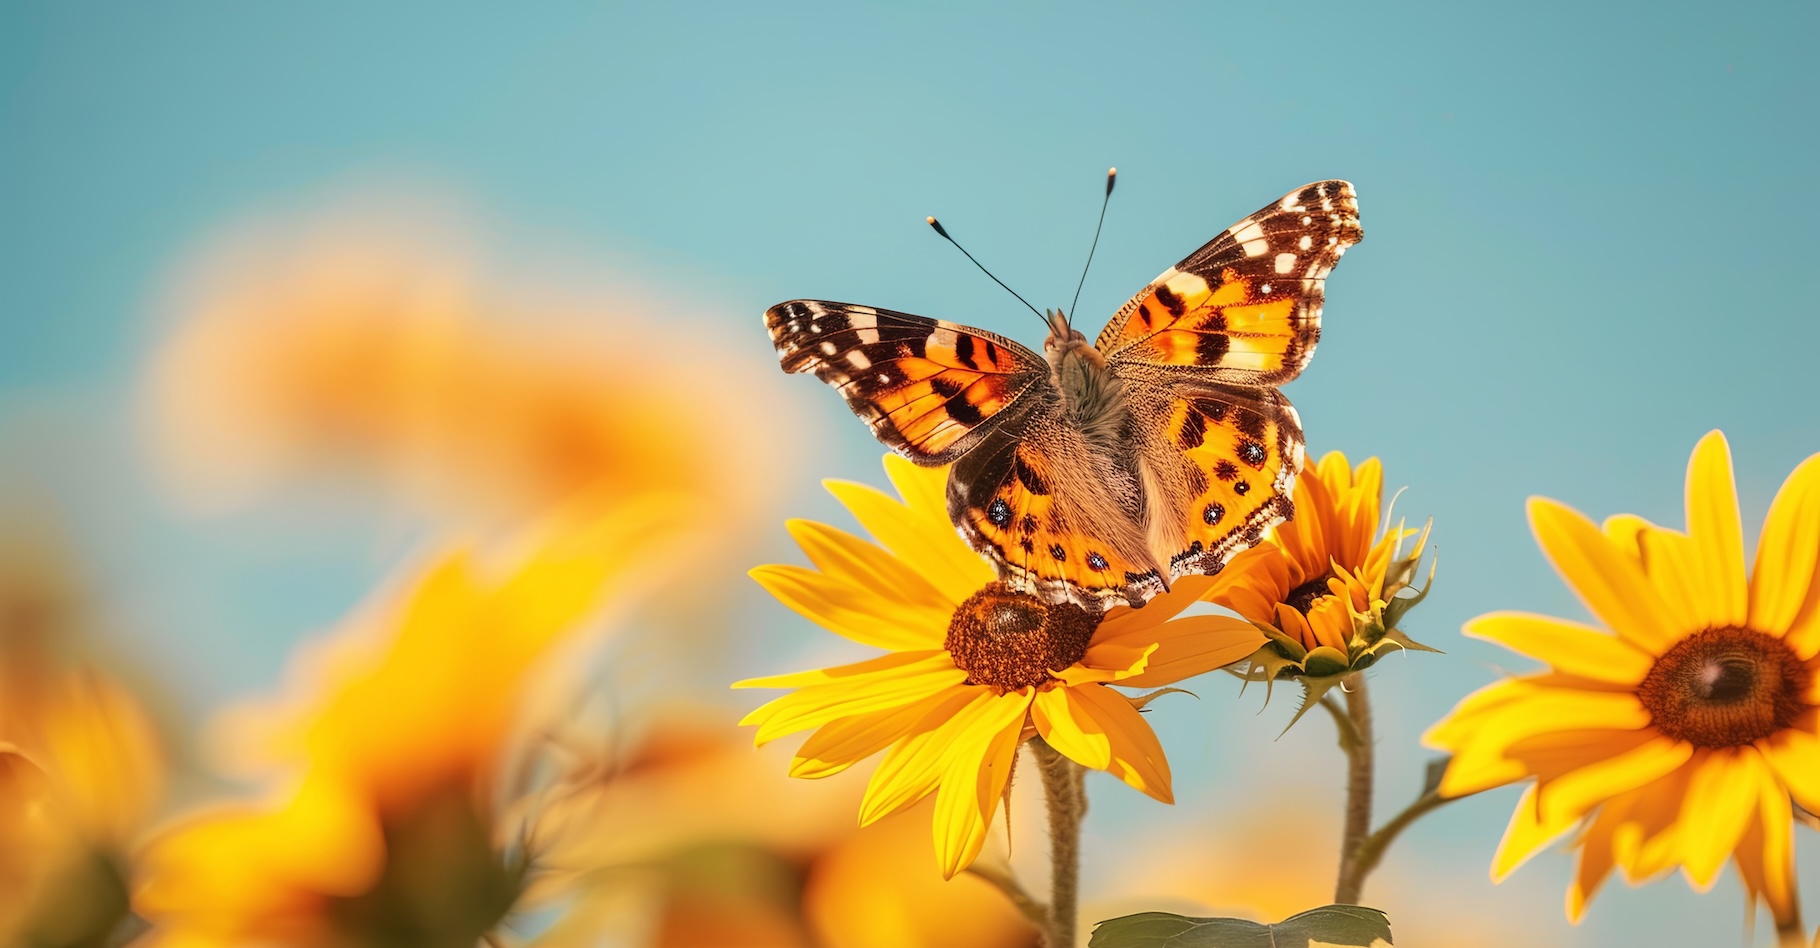 Des chercheurs ont retracé la migration de papillons Belle-Dame à travers l’Atlantique. © Mari, Adobe Stock